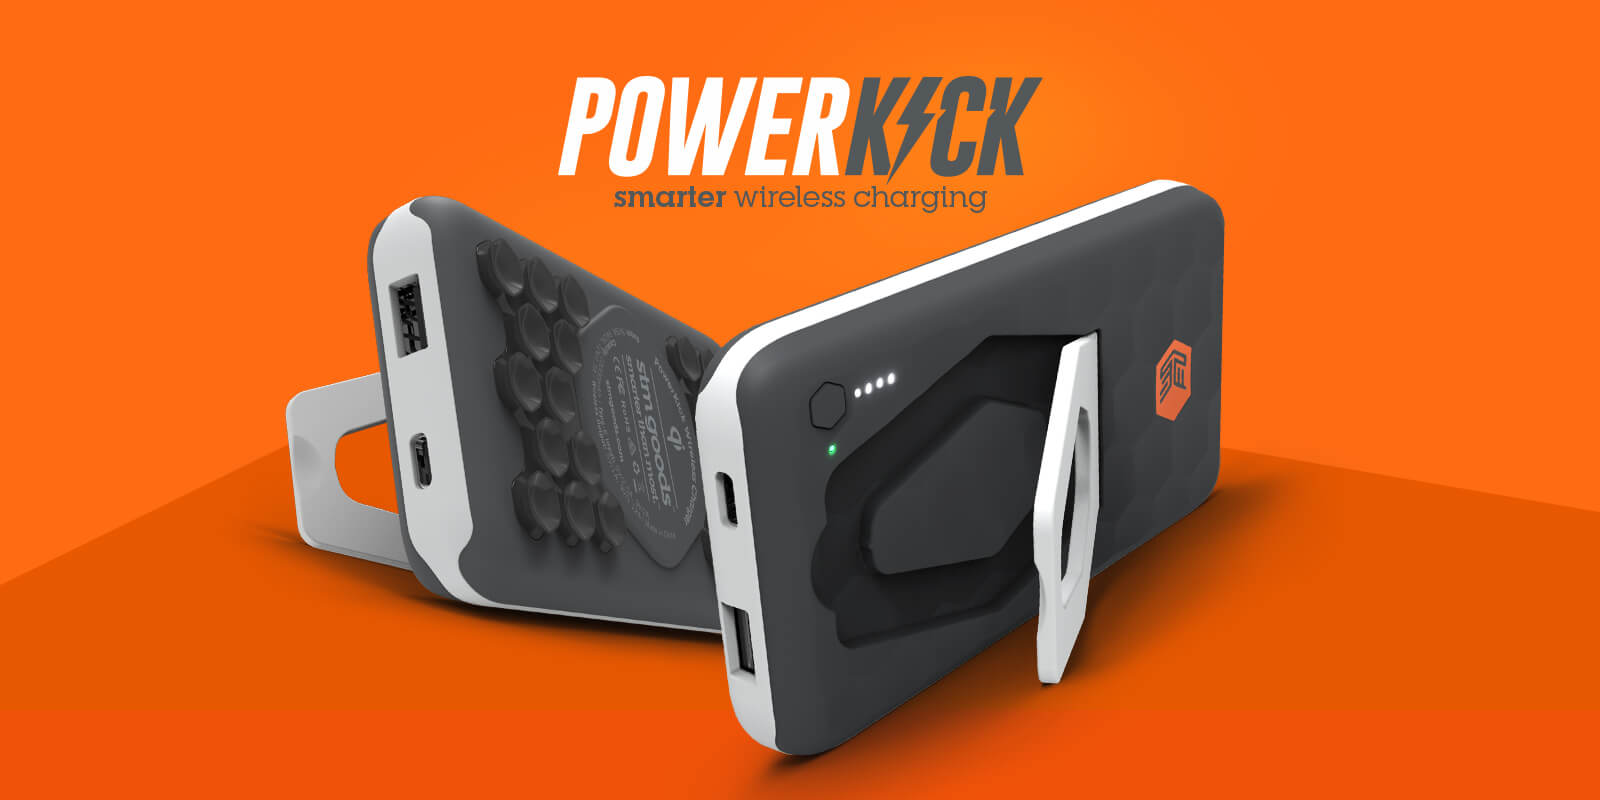 Powerkick – smarter wireless charging